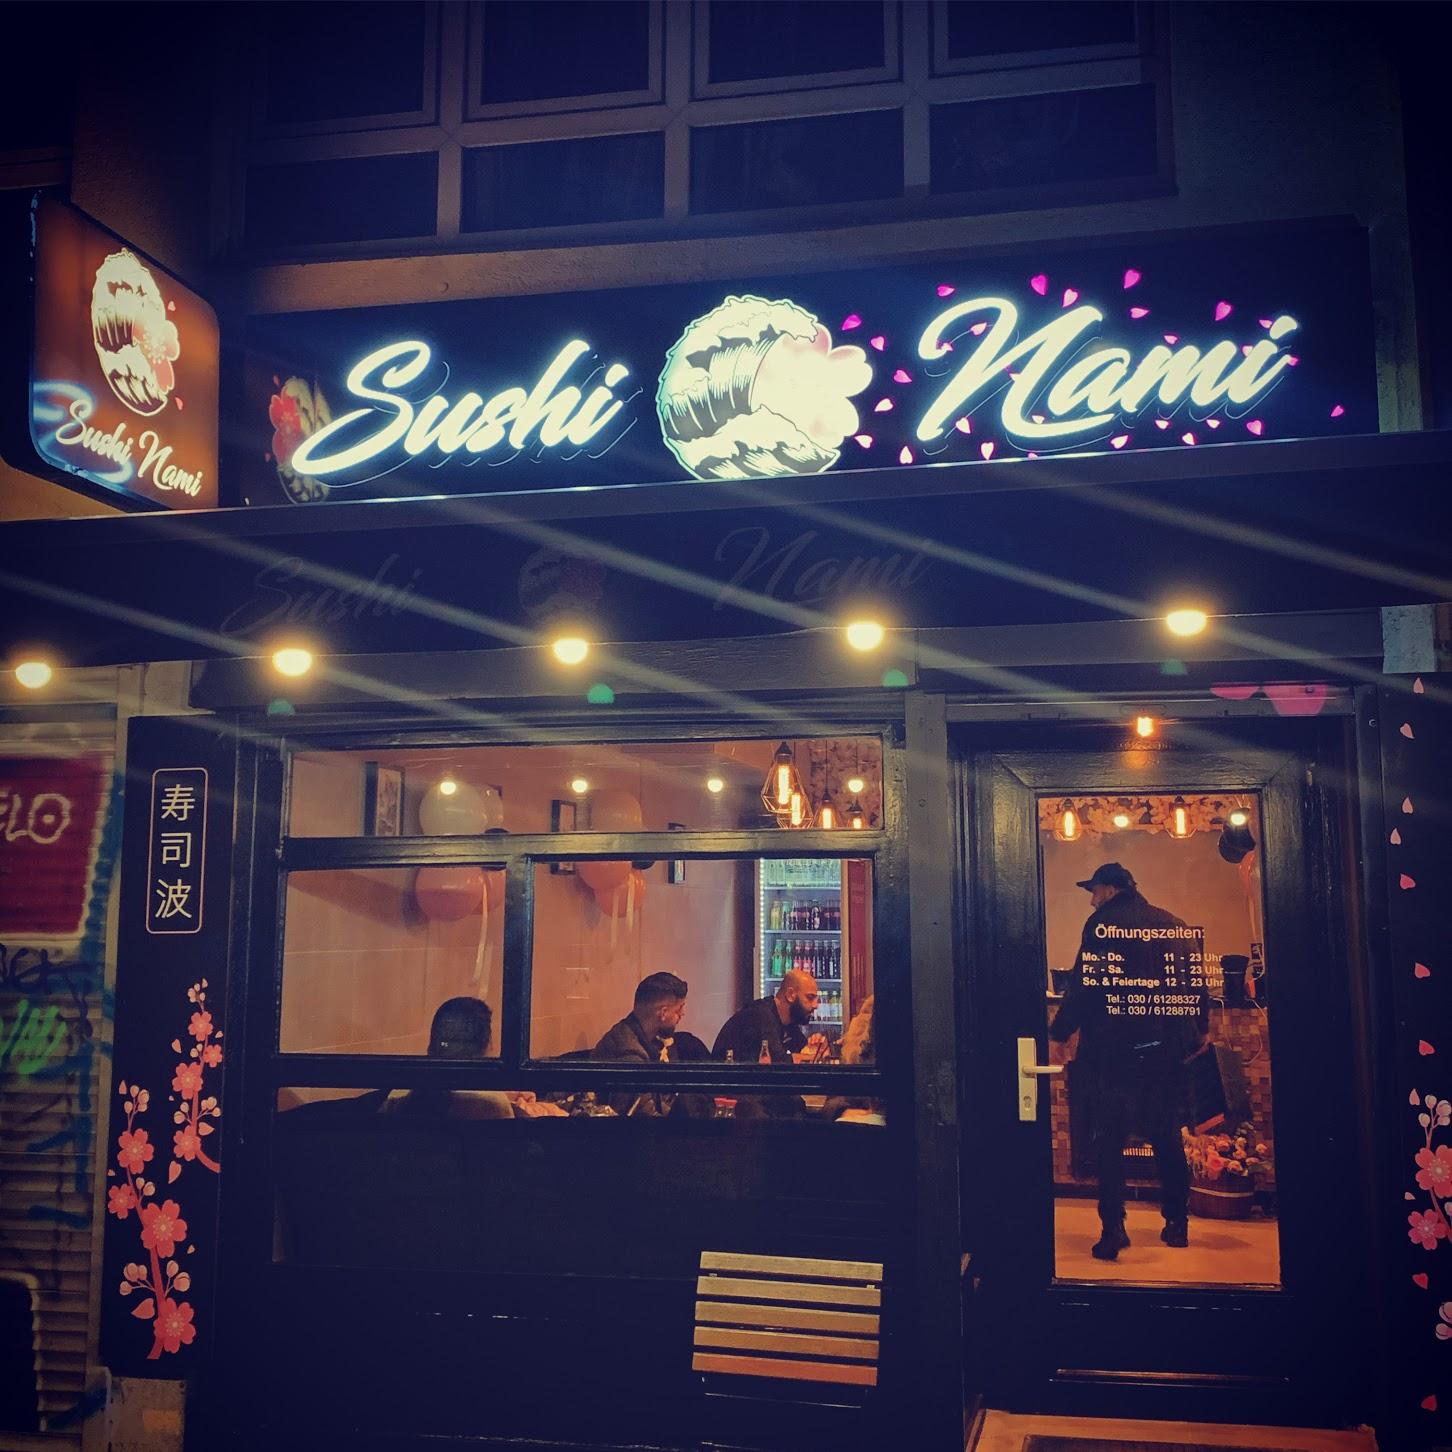 Restaurant "Sushi Nami" in Berlin